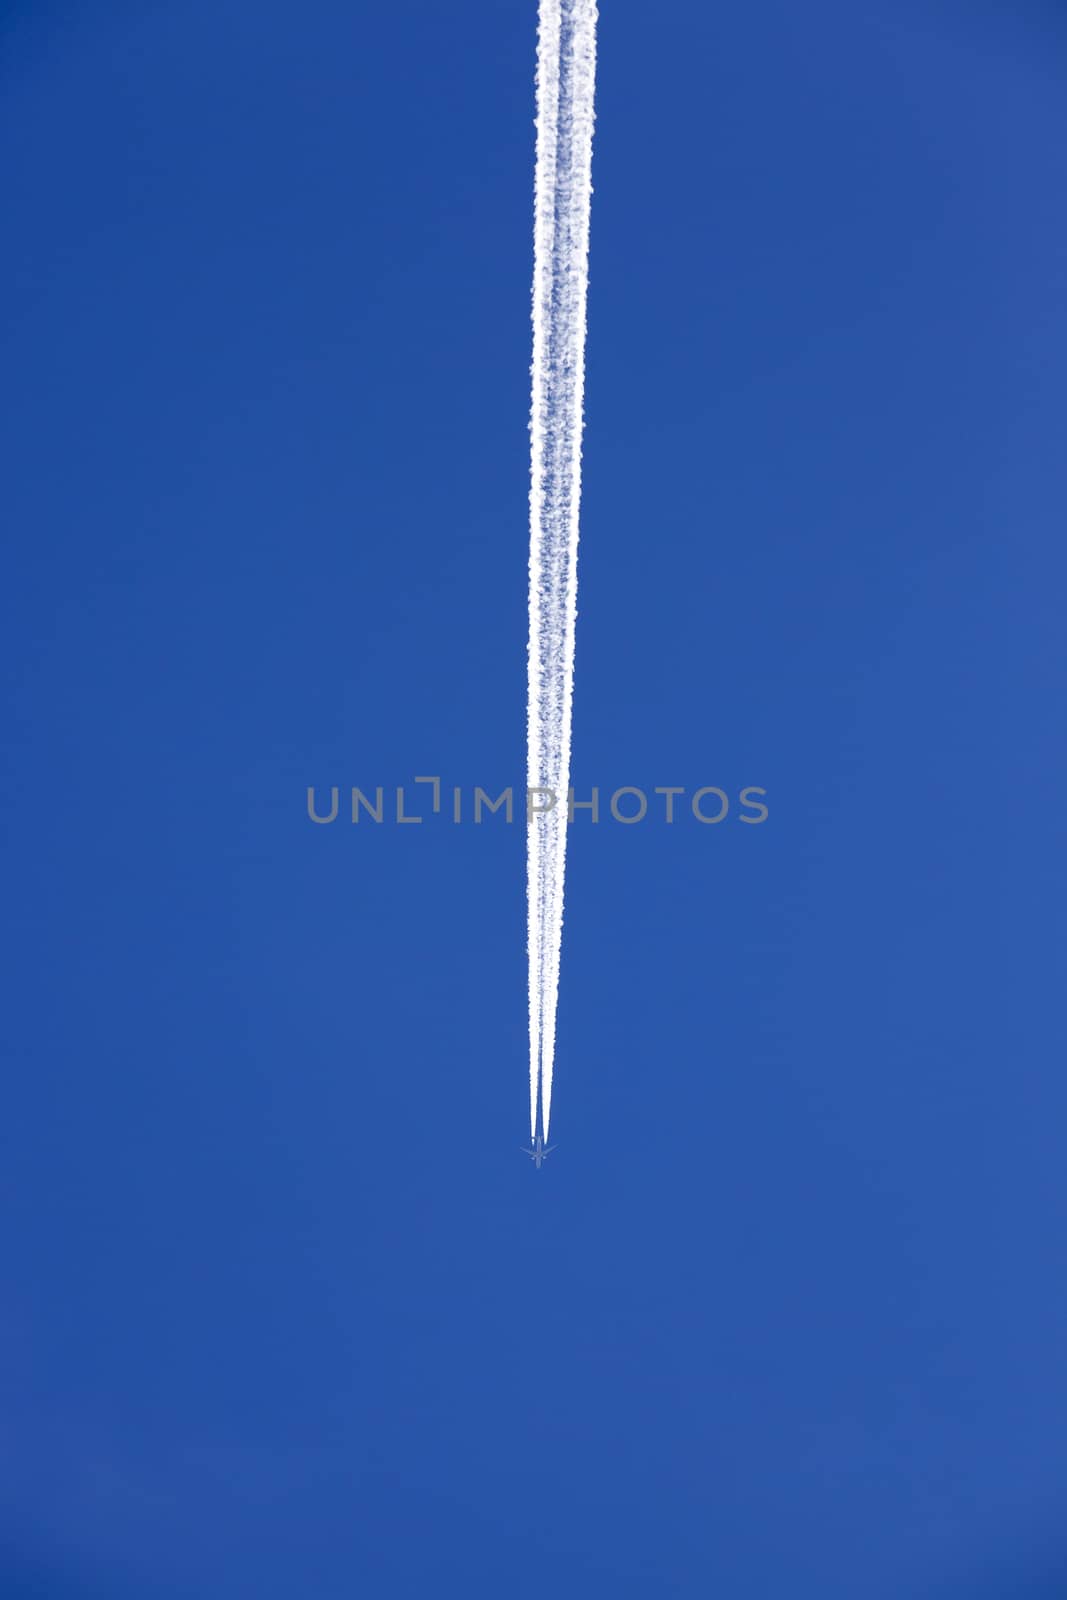 Plane in the sky   by avq